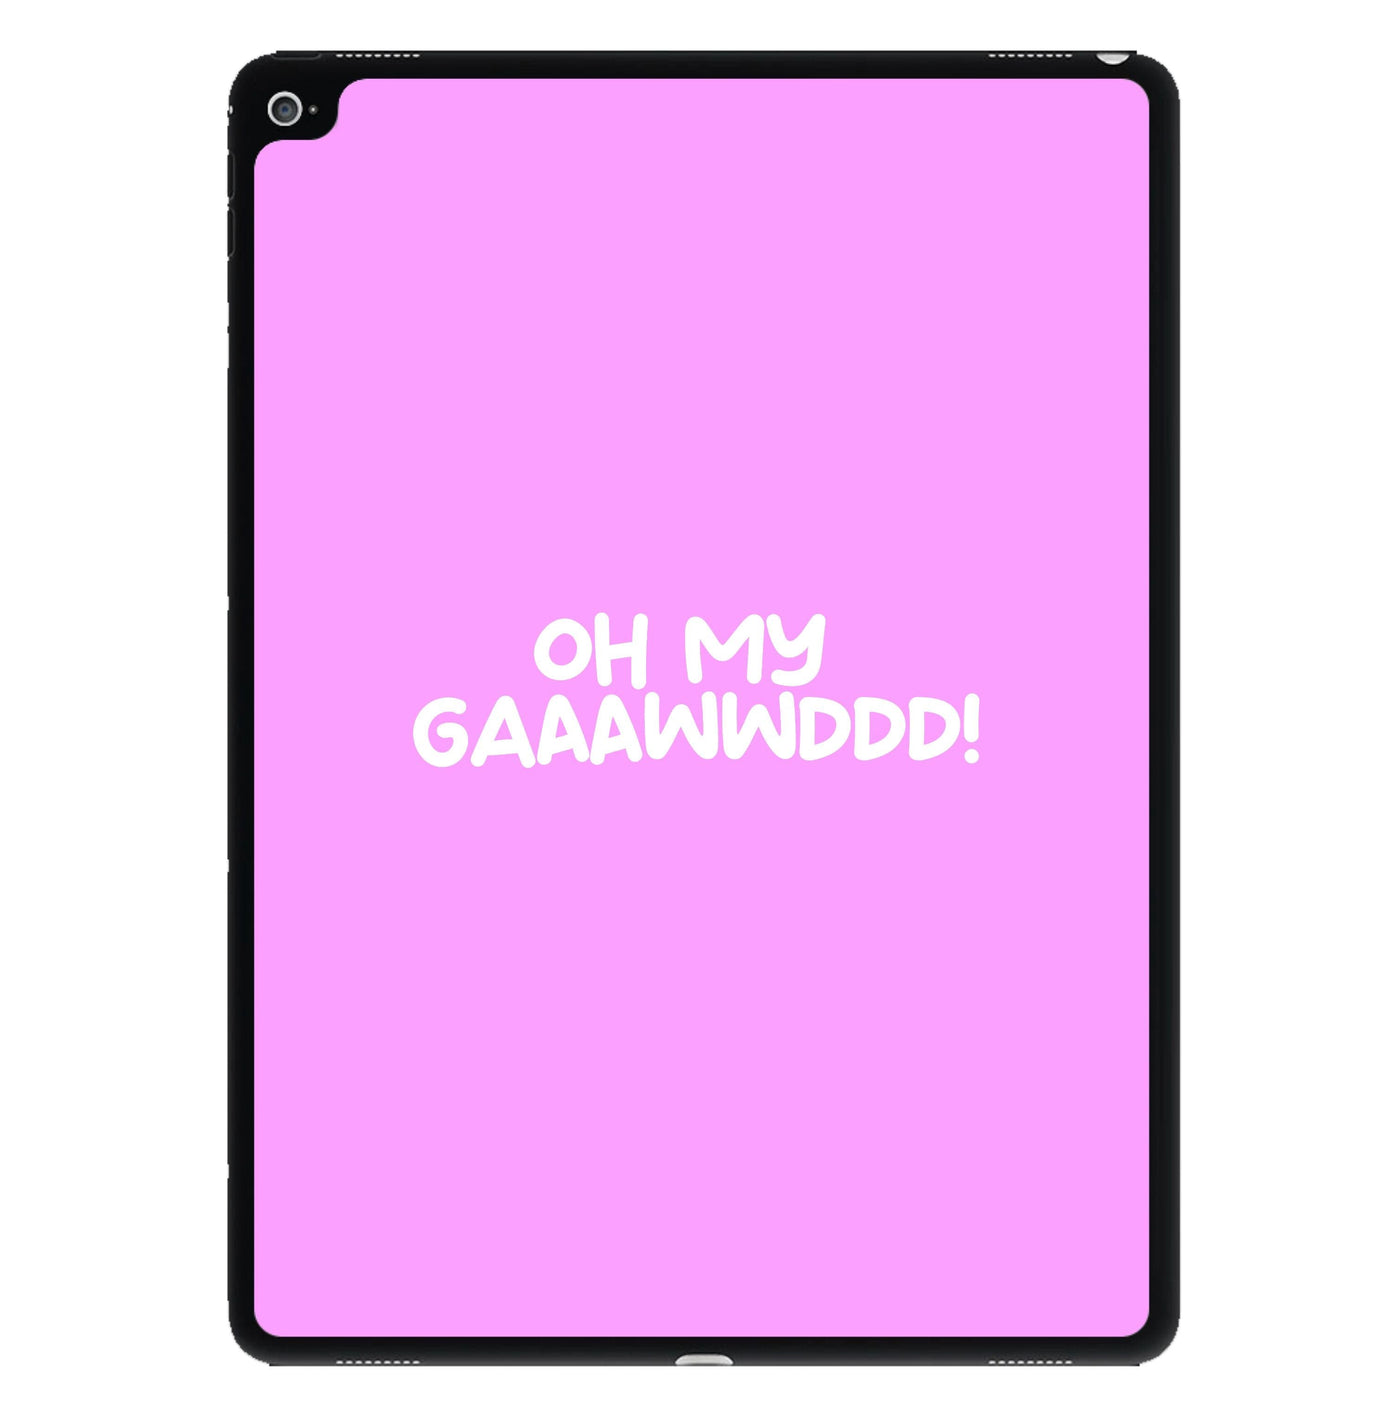 Oh My Gaaawwddd! - Islanders iPad Case